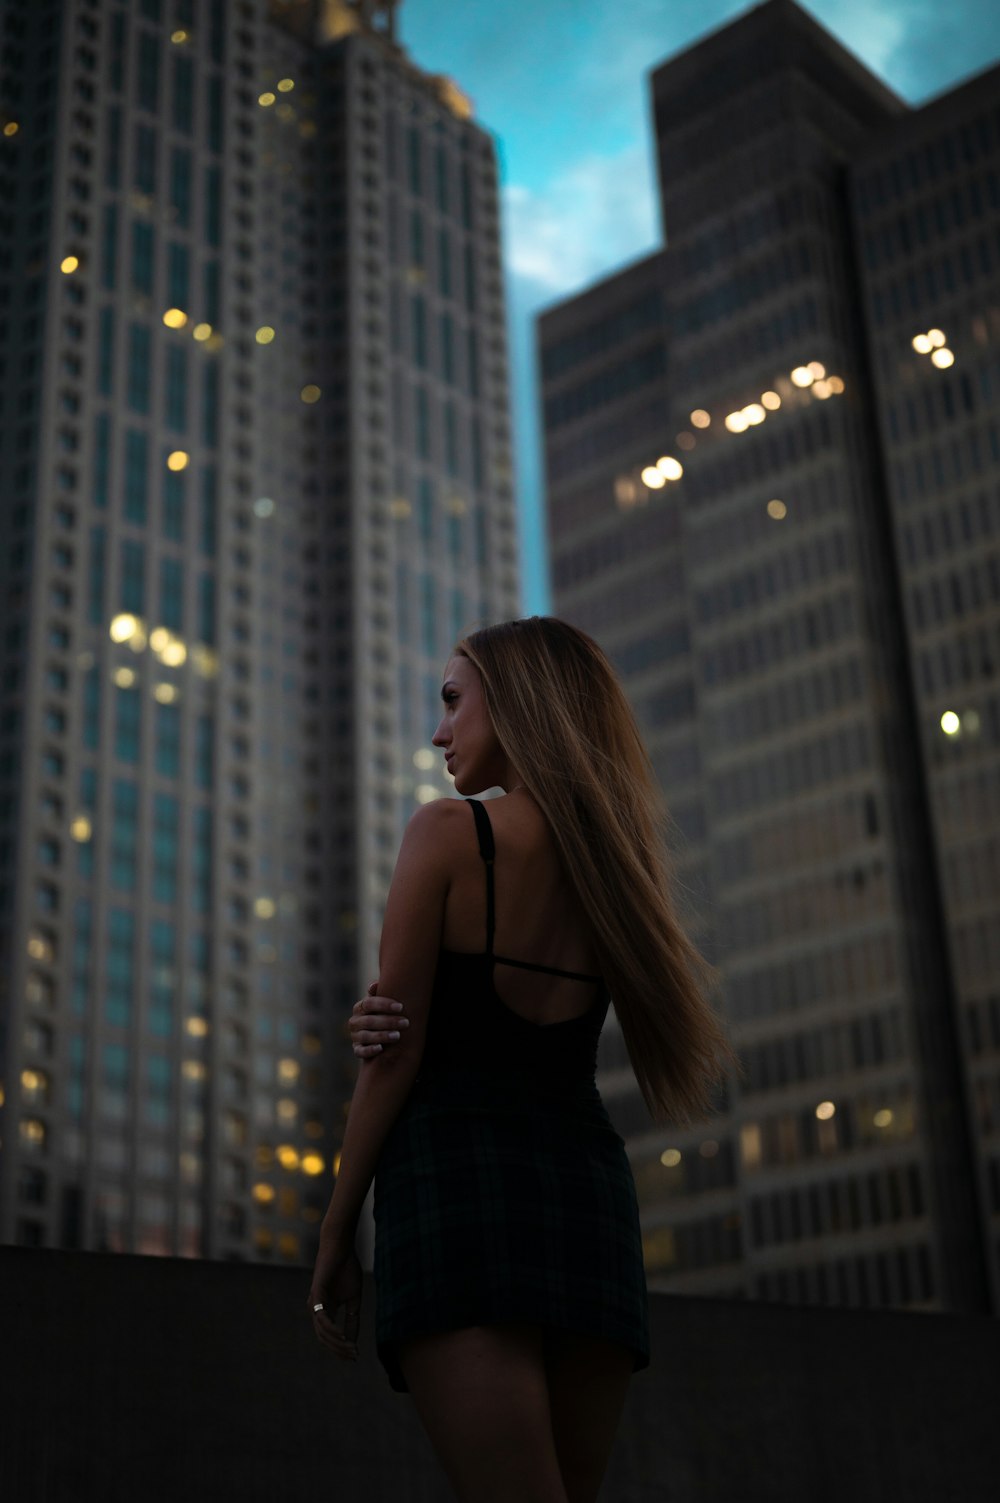 검은 스파게티 스트랩 탑을 입은 여자가 밤 시간에 고층 건물 앞에 서 있다